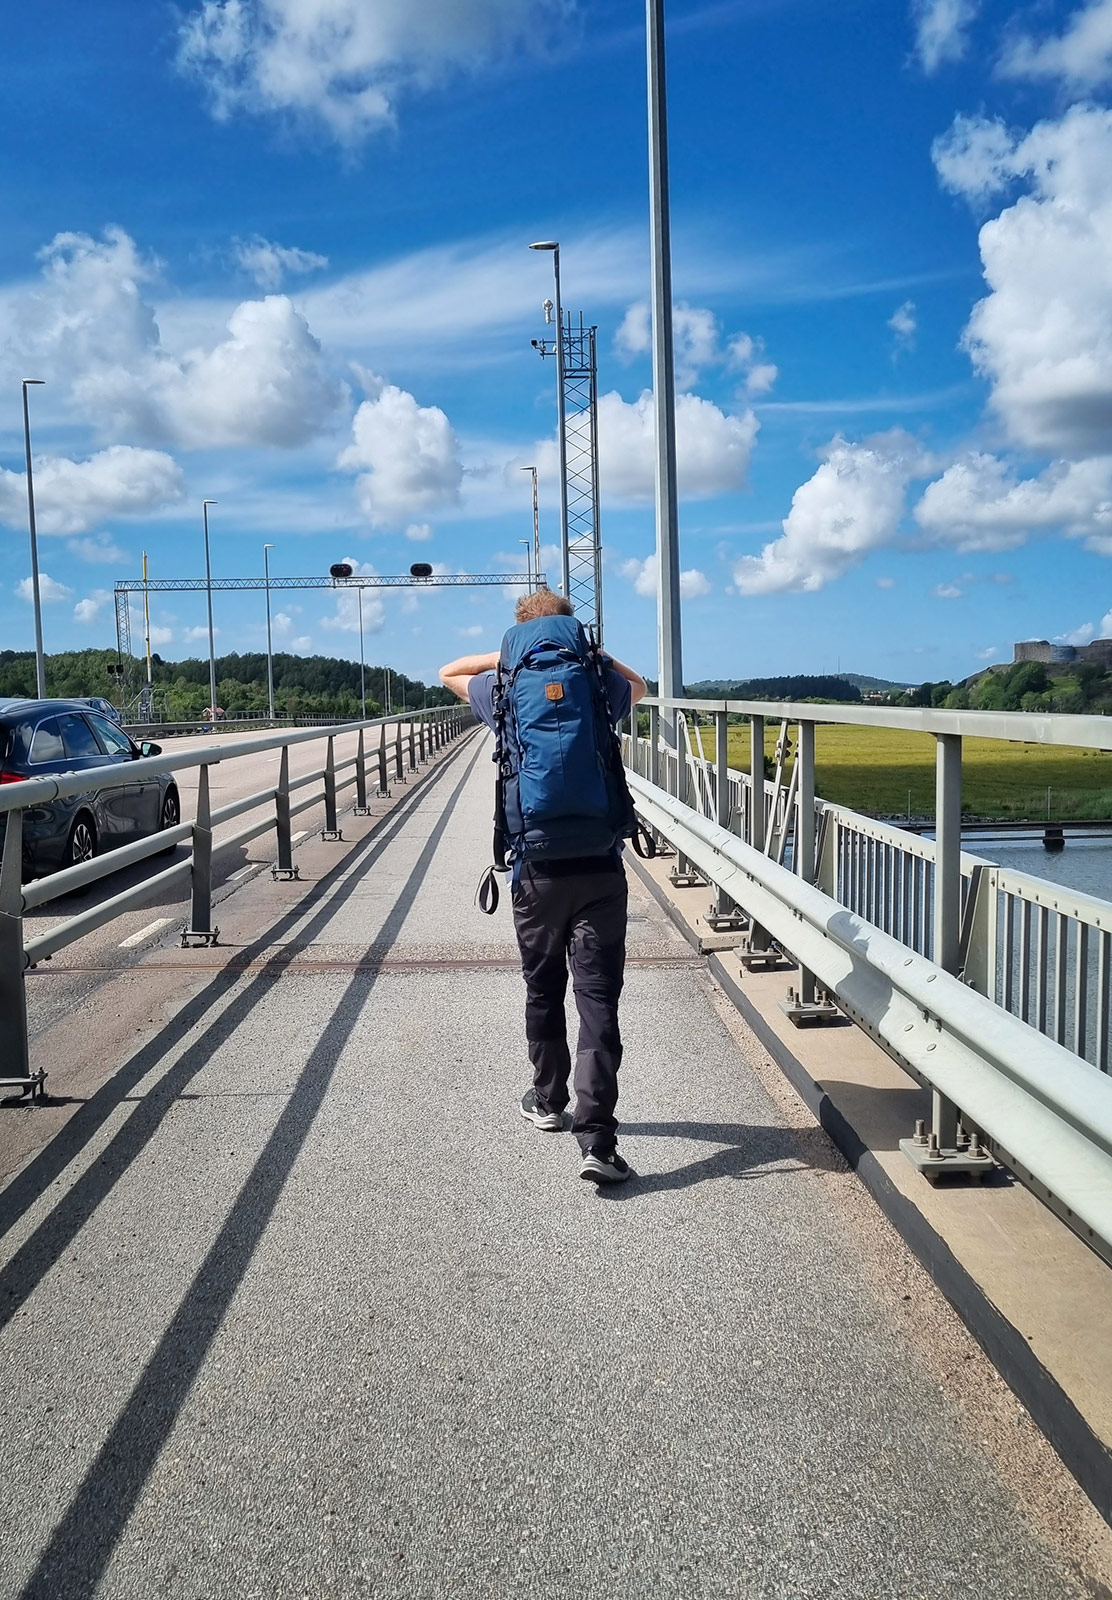 Man walking along bridge path